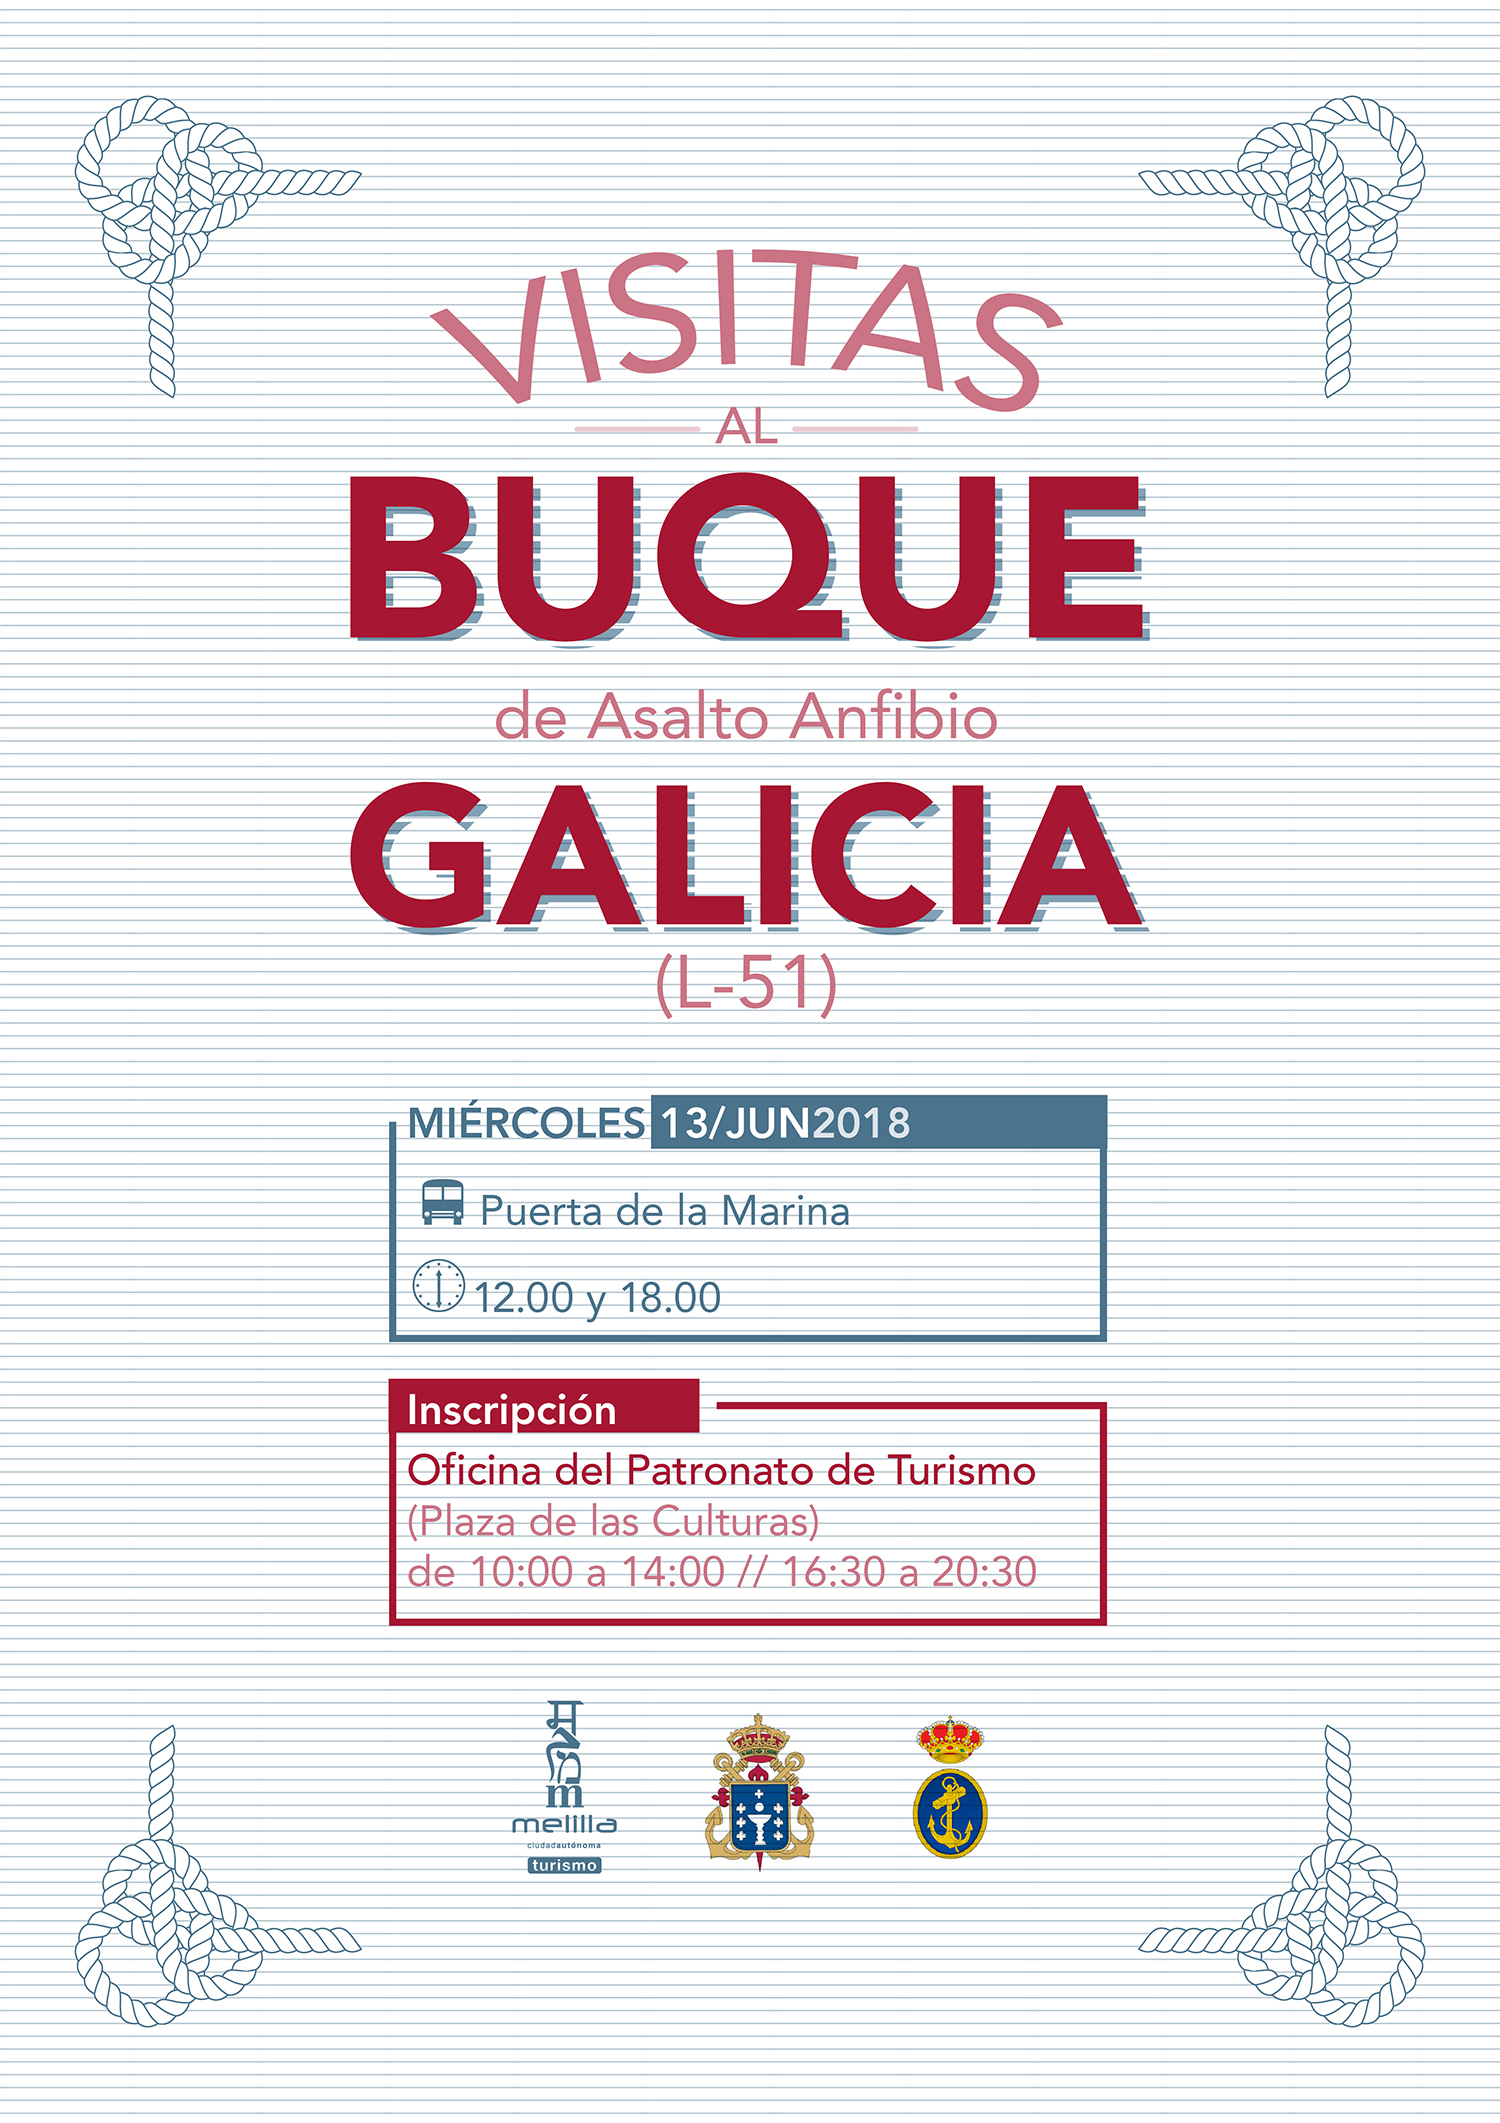 Cartel Visitas al buque de asalto anfibio Galicia (L-51)